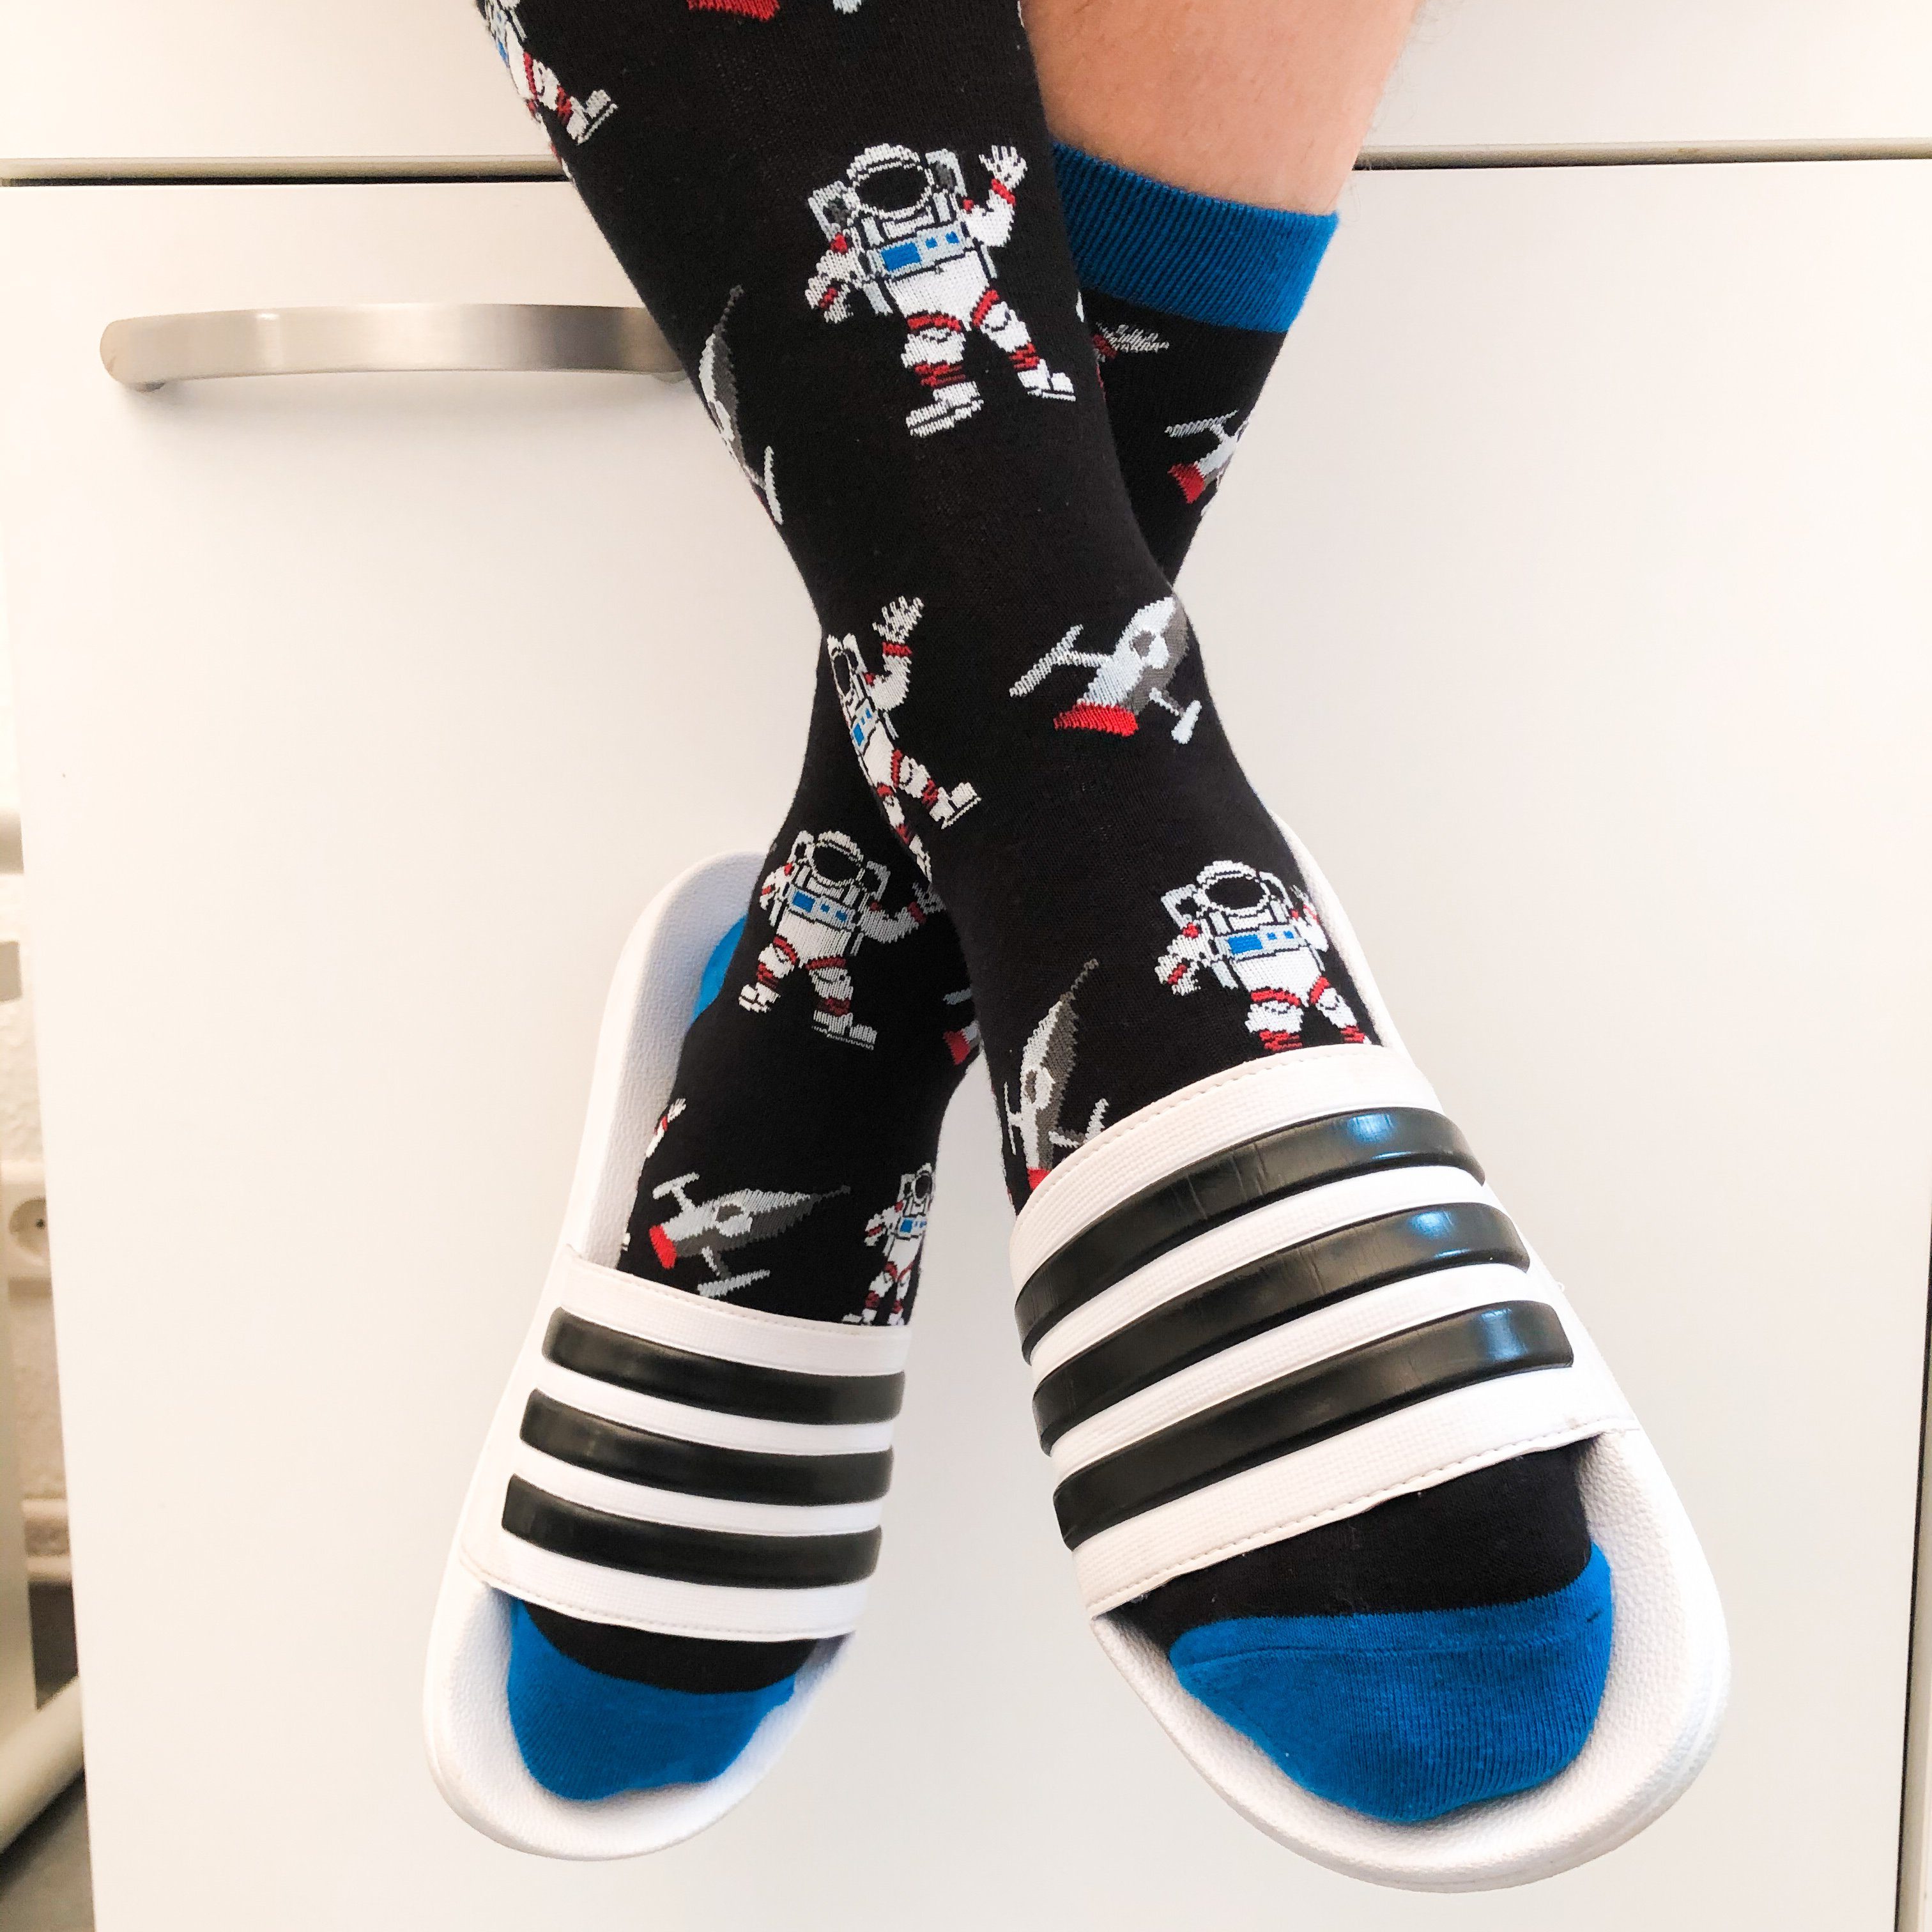 Socken Socken TwoSocks Astronaut Freizeitsocken lustige Einheitsgröße Herren, Damen &